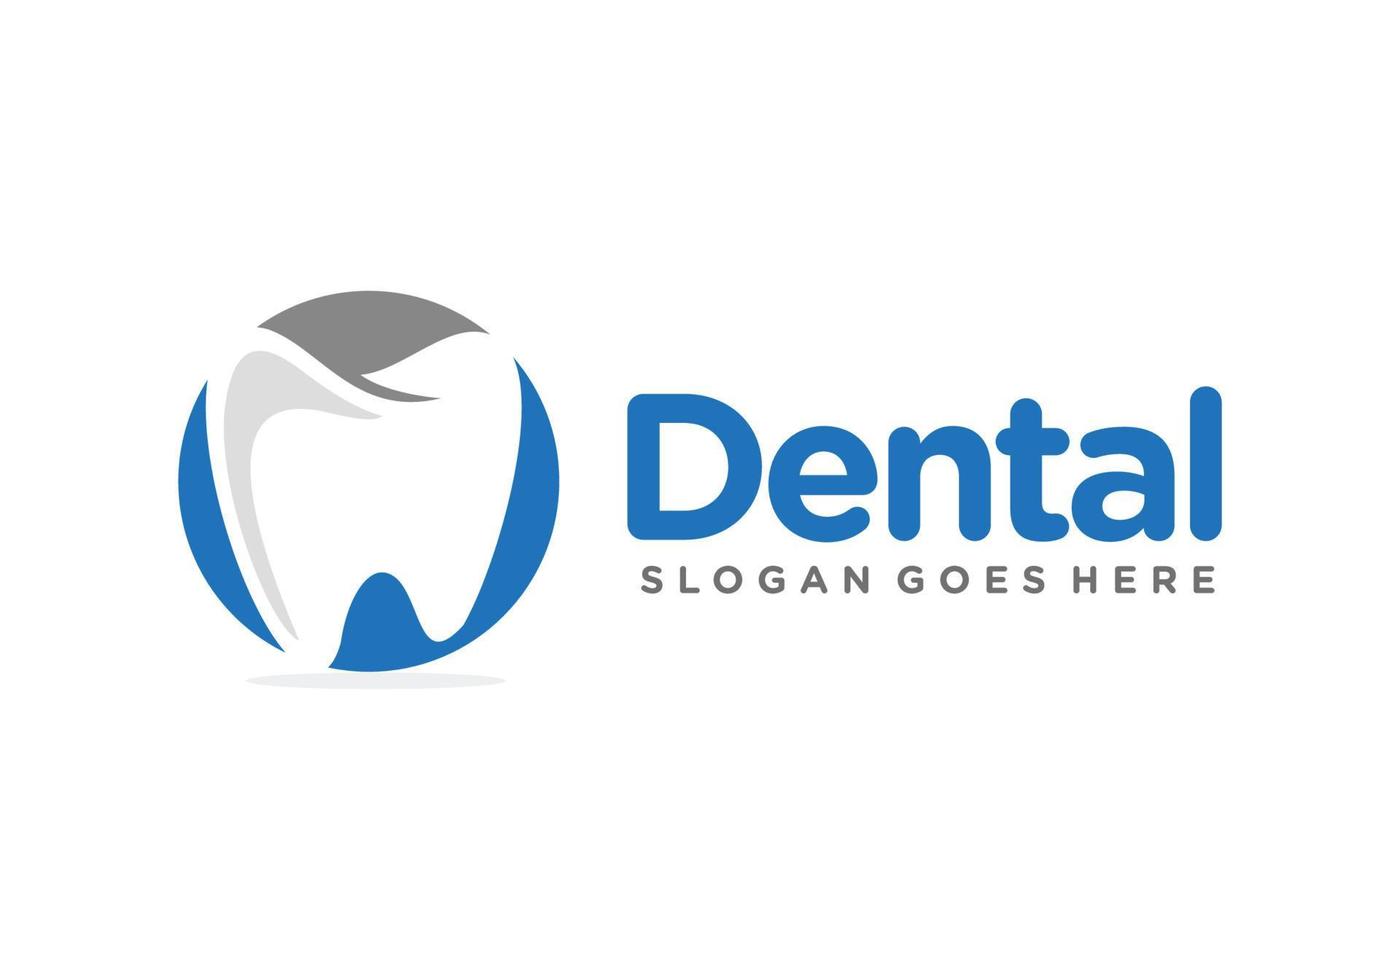 dental, tandvård, tand logotyp design vektor